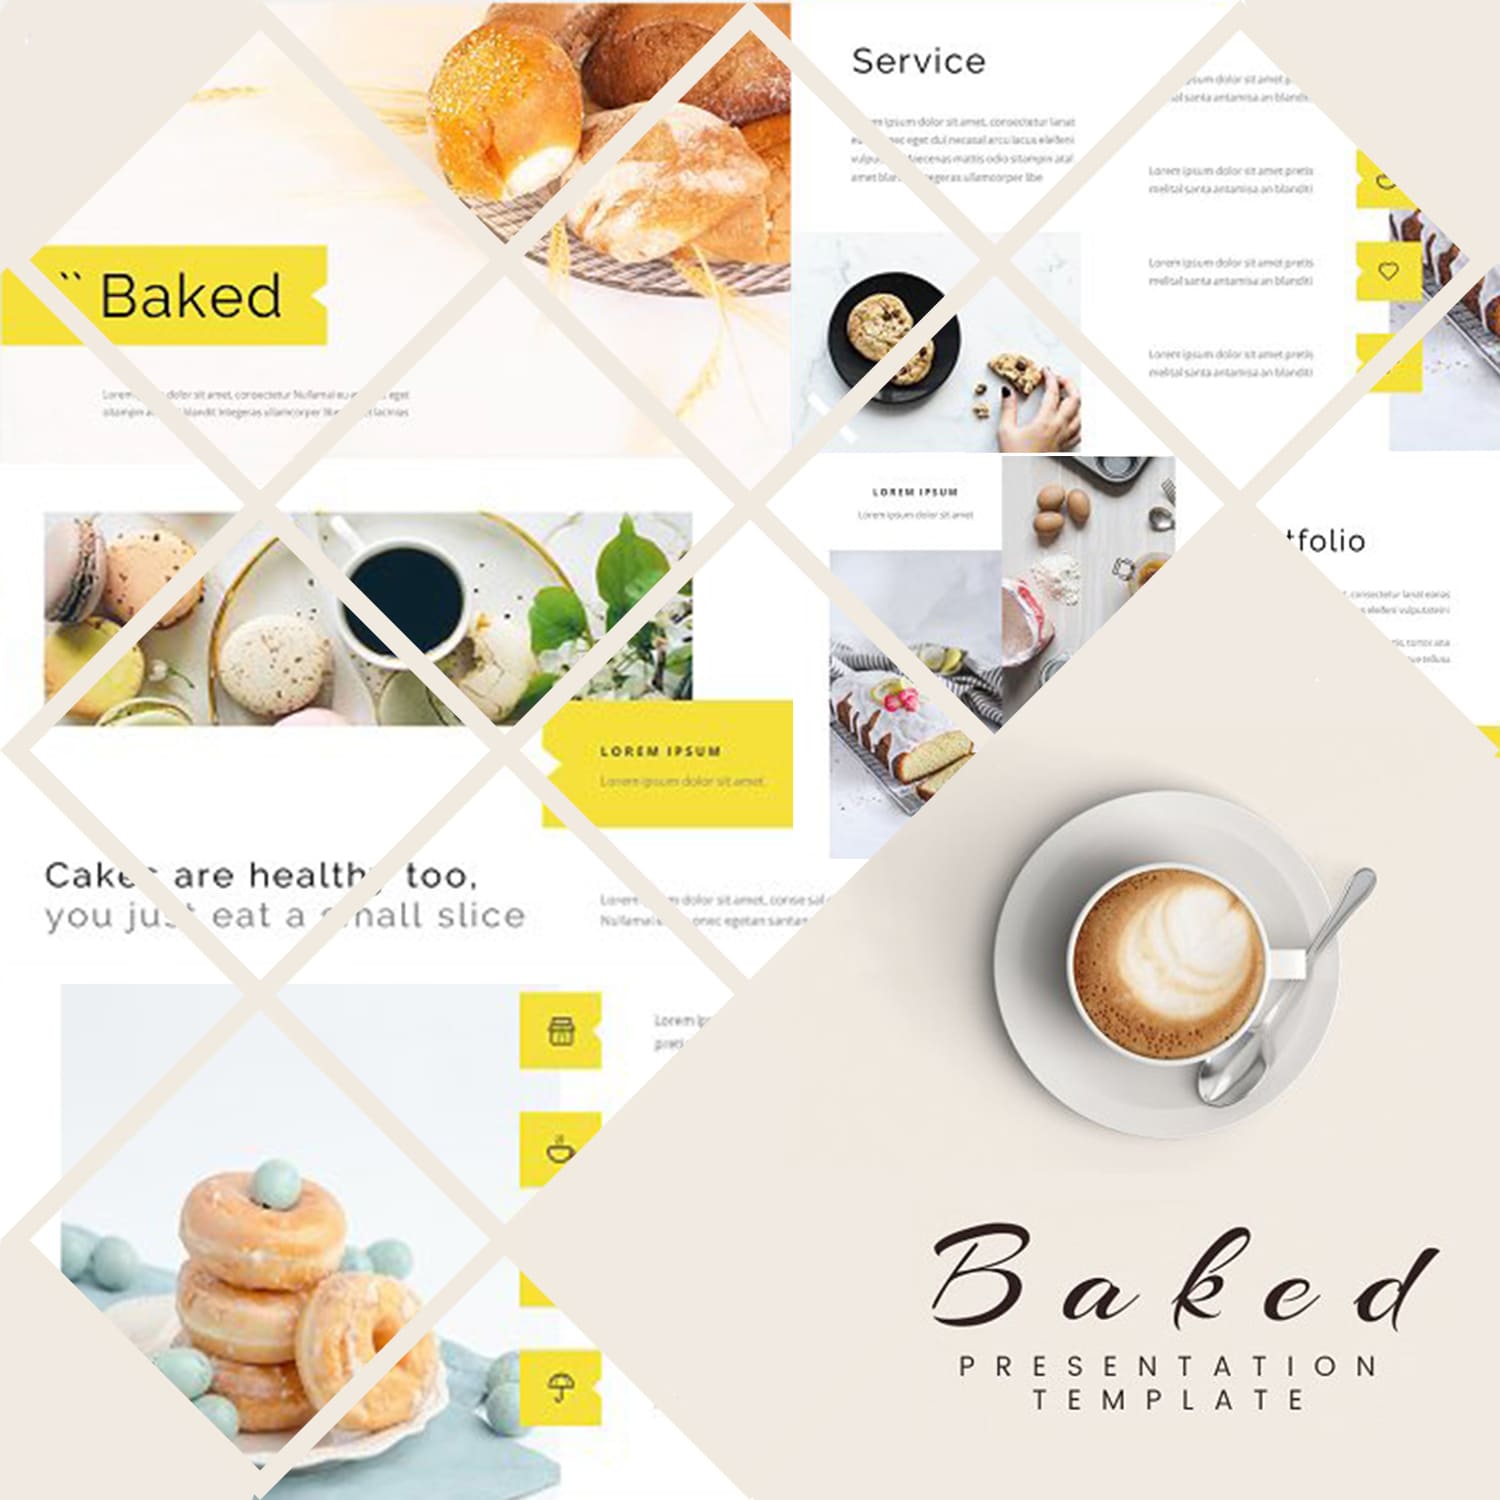 Baked - Bakery Google Slide Template cover.